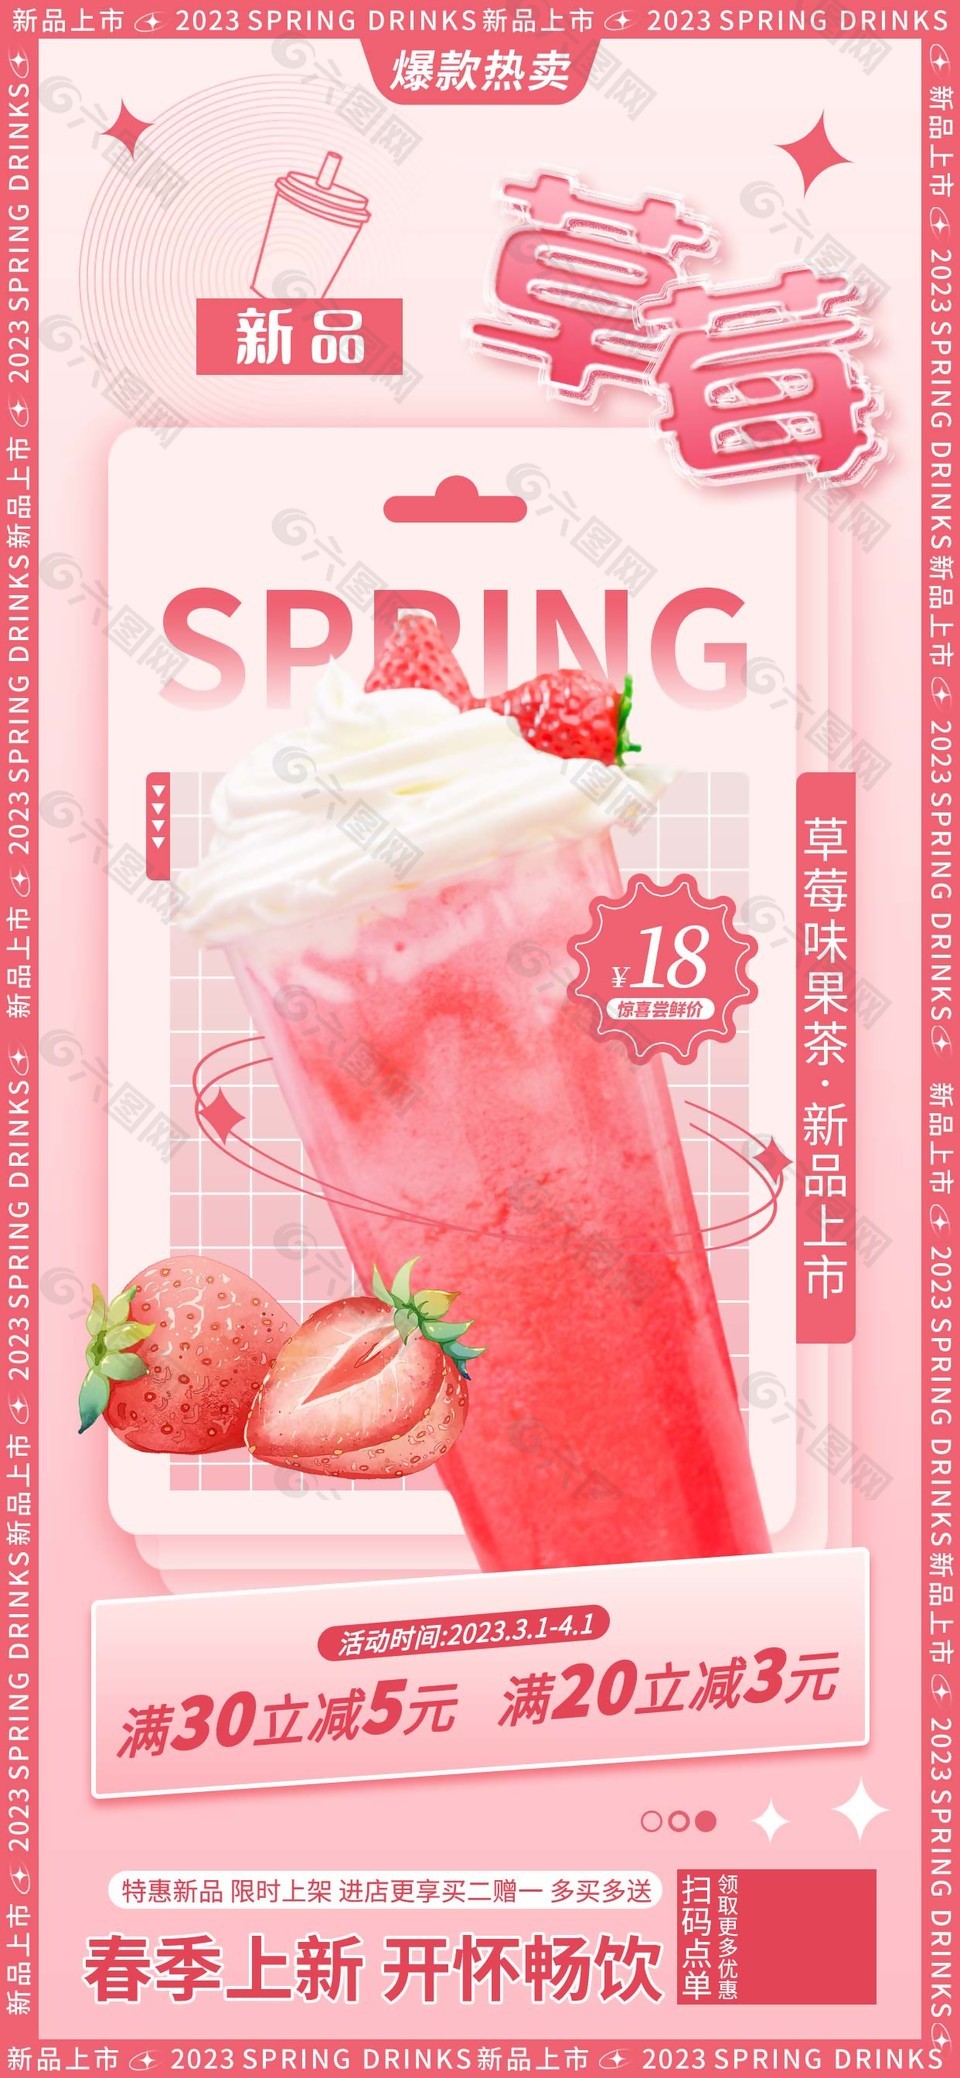 新品草莓味果茶创意素材海报